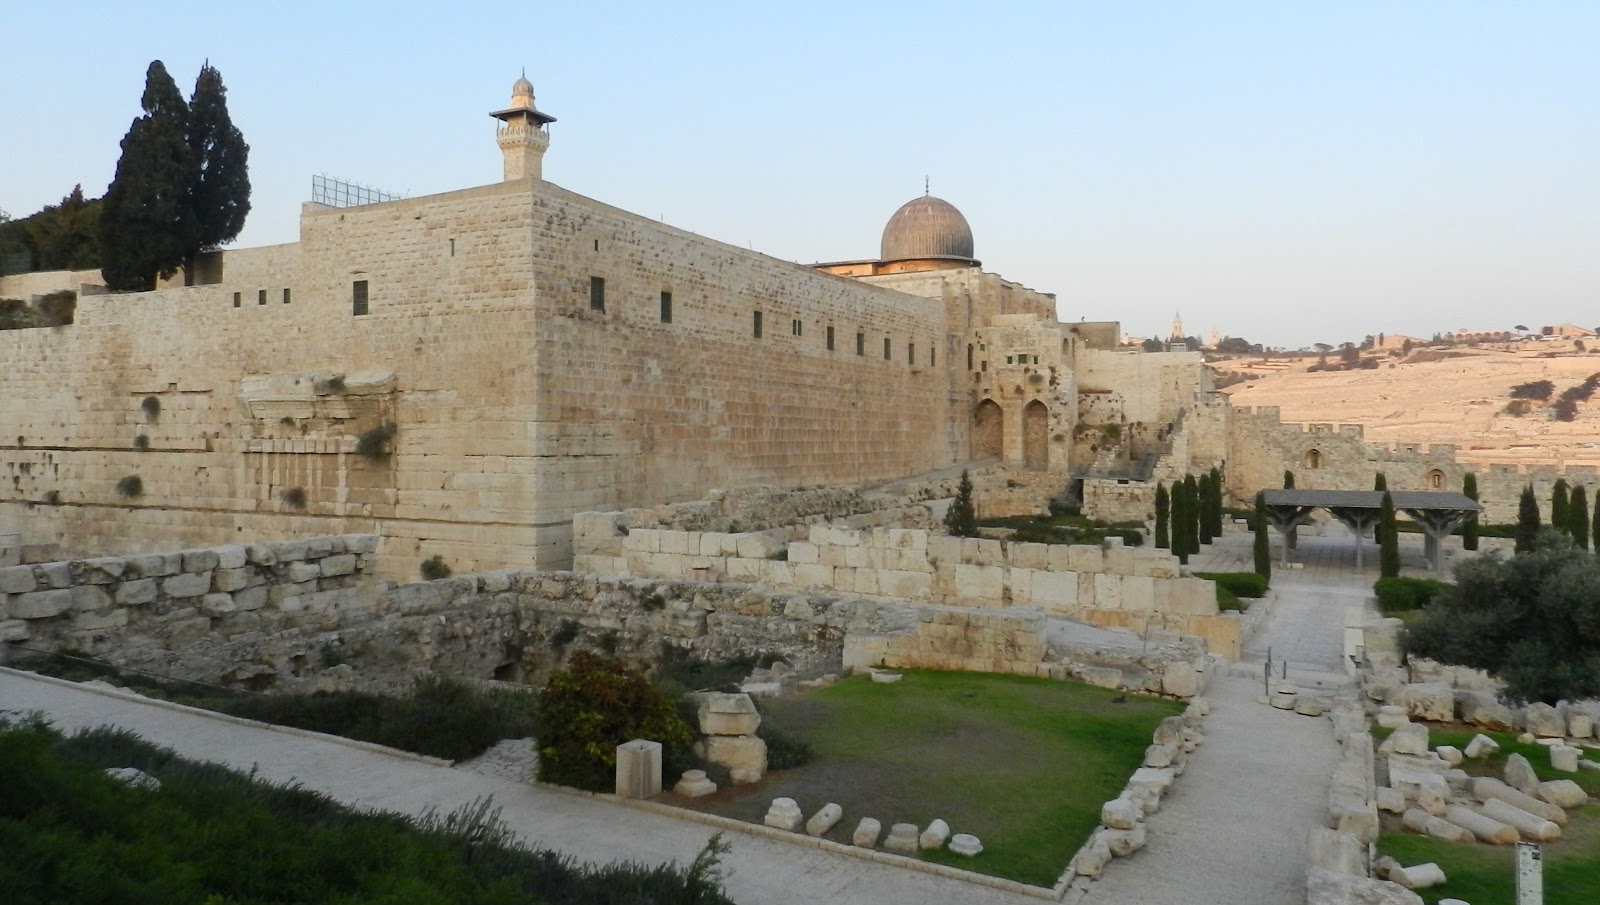 Primordi della società ebraica: alcune considerazioni sui regni del Medio-Oriente